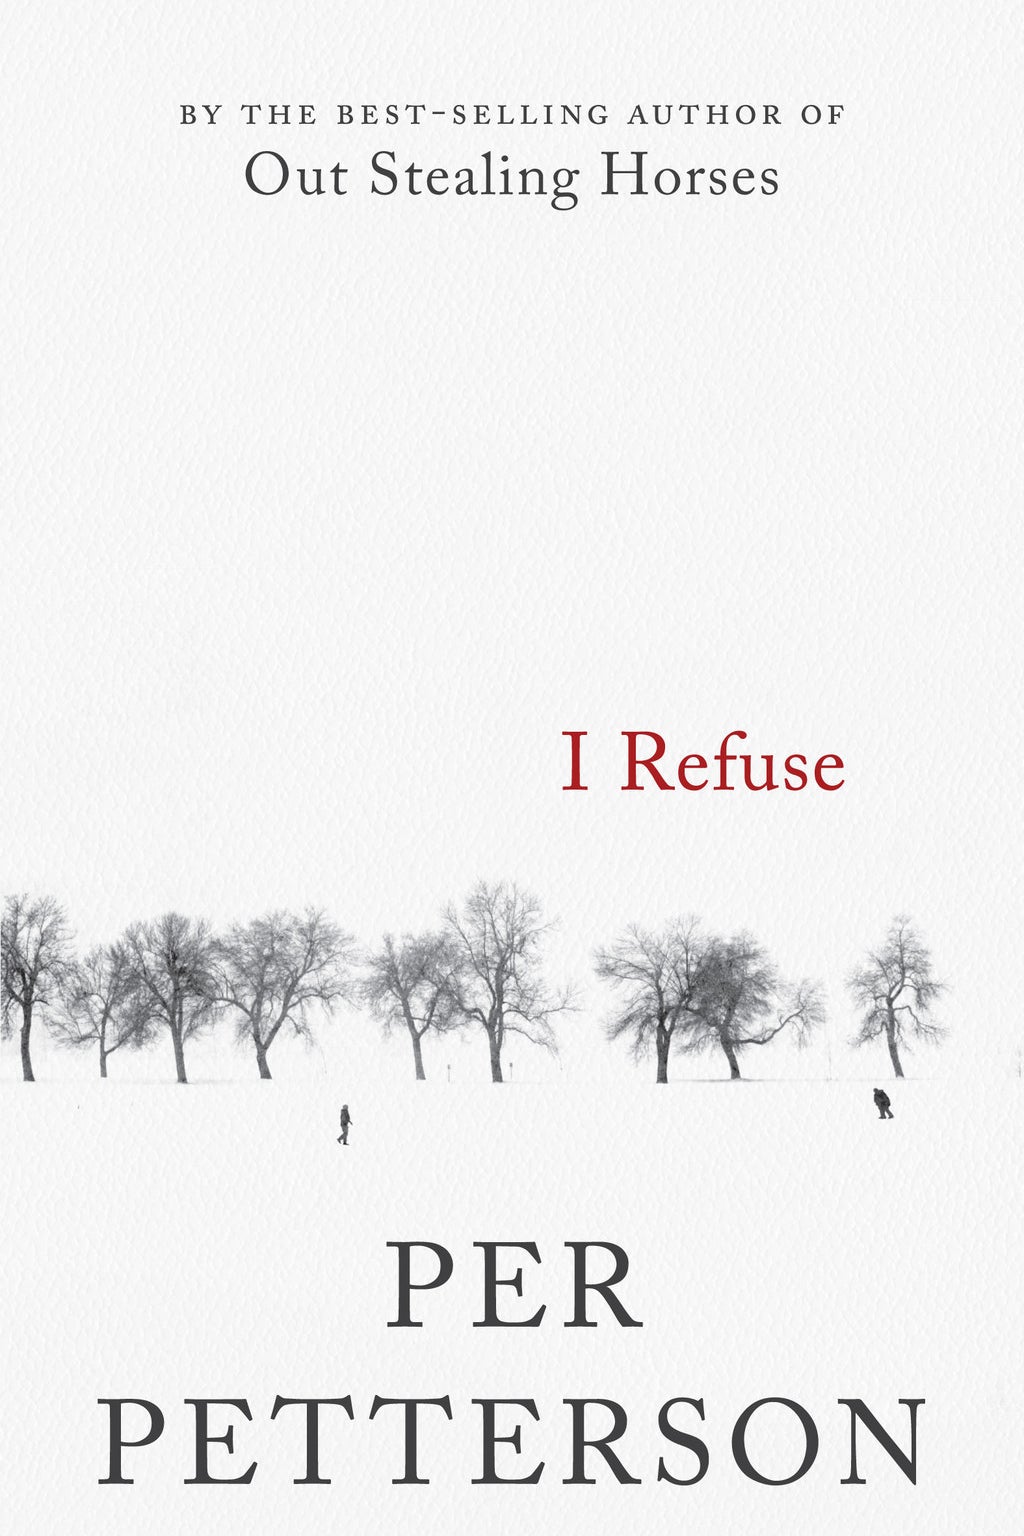 I Refuse by Per Petterson